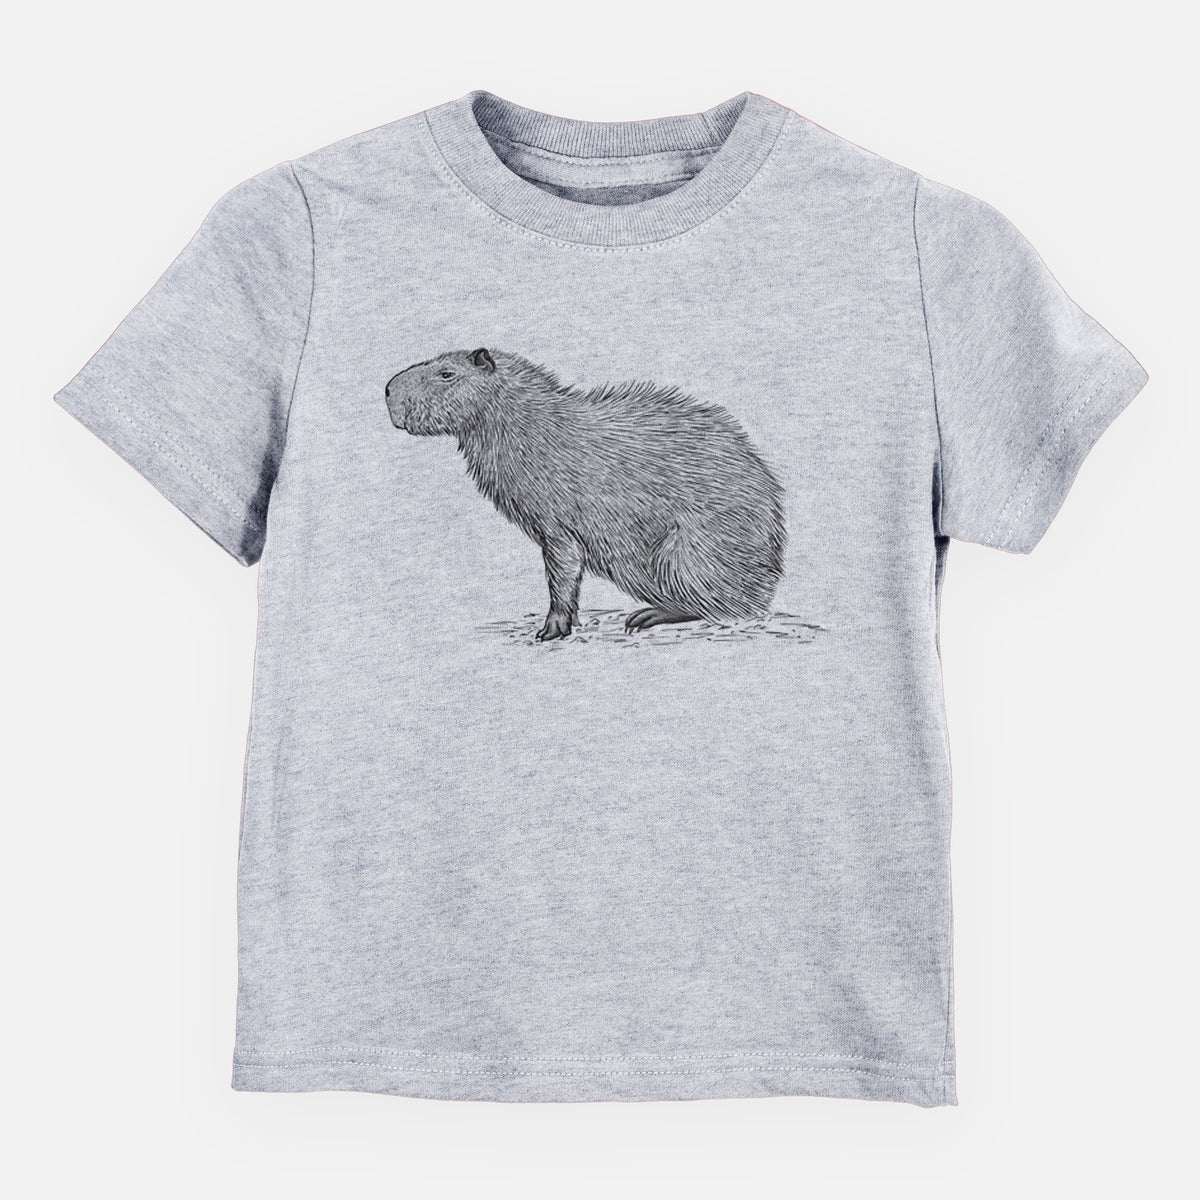 Capybara Profile - Hydrochoerus hydrochaeris - Kids Shirt